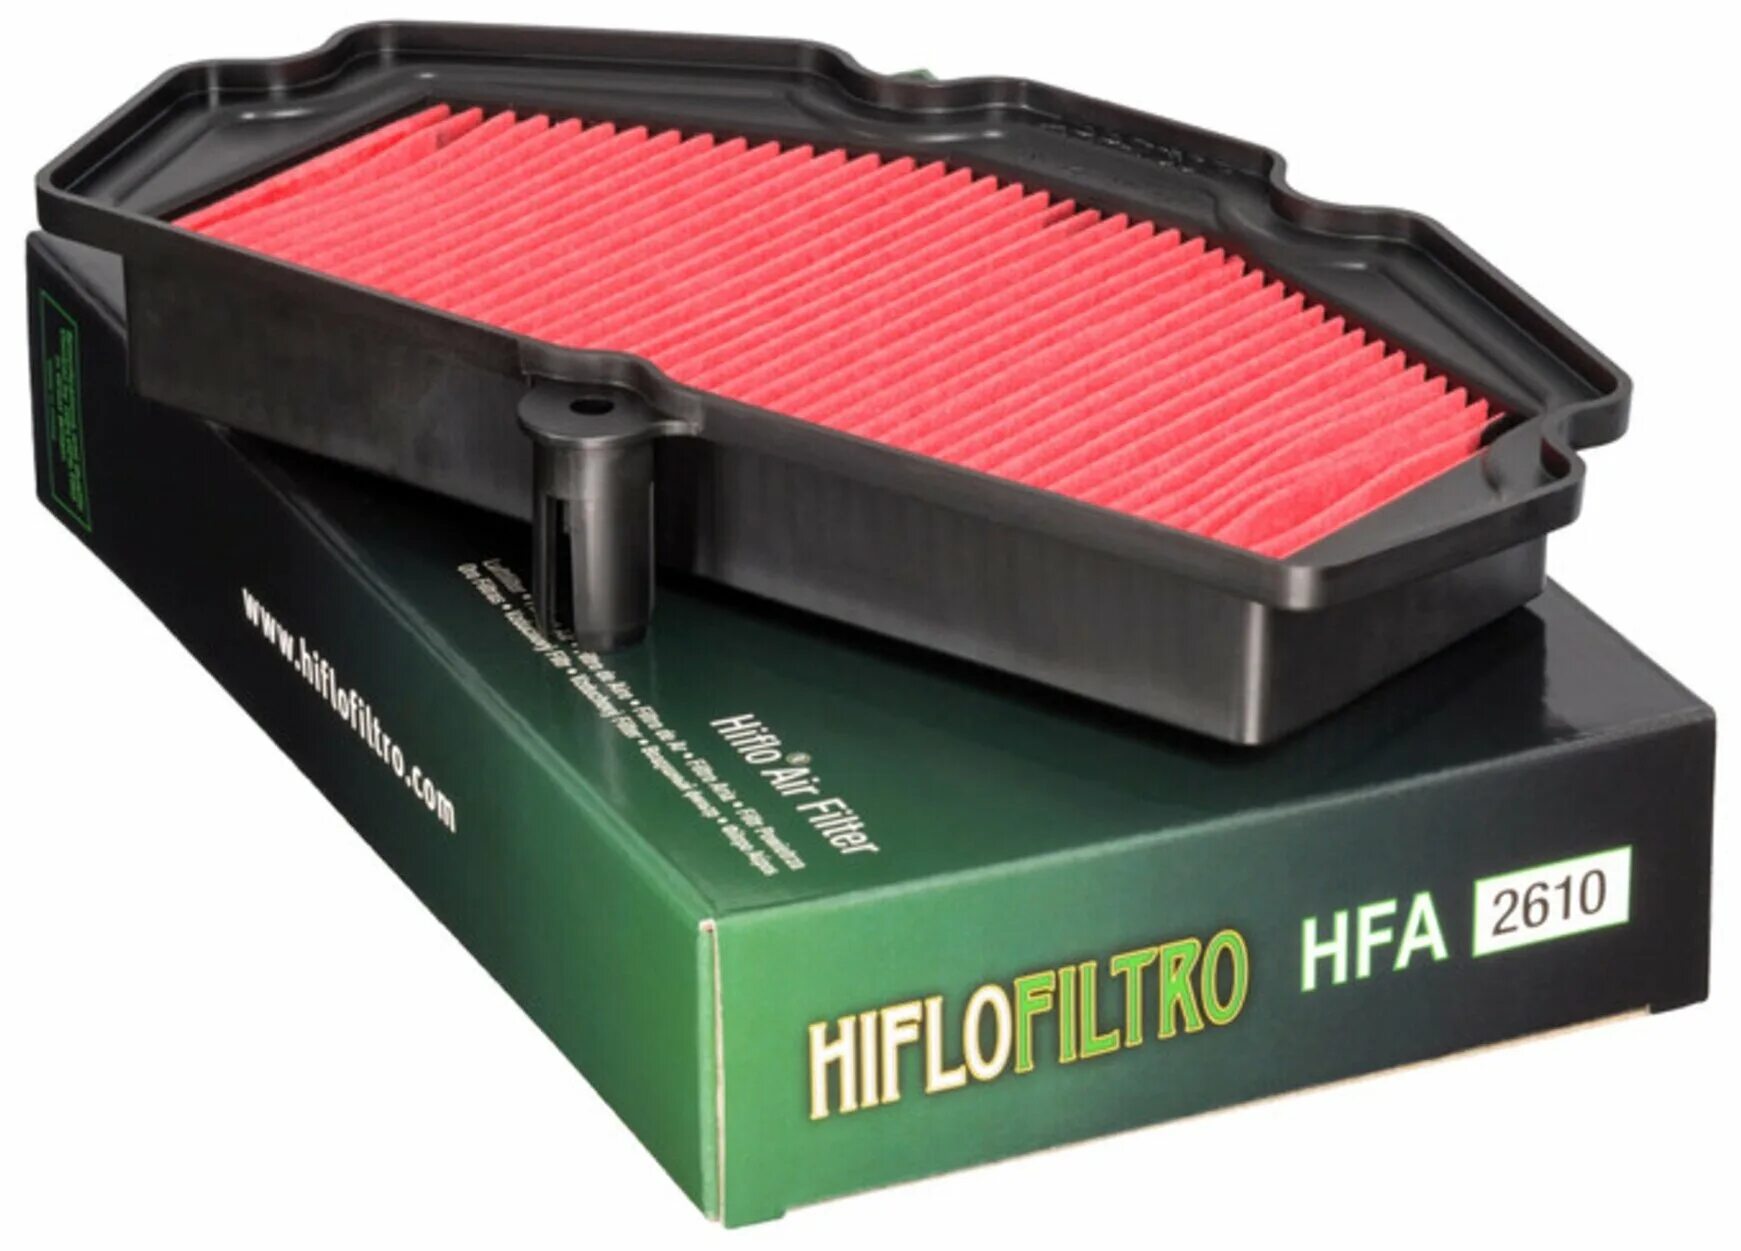 Фильтр воздушный HIFLO hff4012. Фильтр воздушный hfa2610. Воздушный фильтр Kawasaki 11013. Воздушный фильтр HIFLO Kawasaki 2607. Воздушные фильтры hiflo